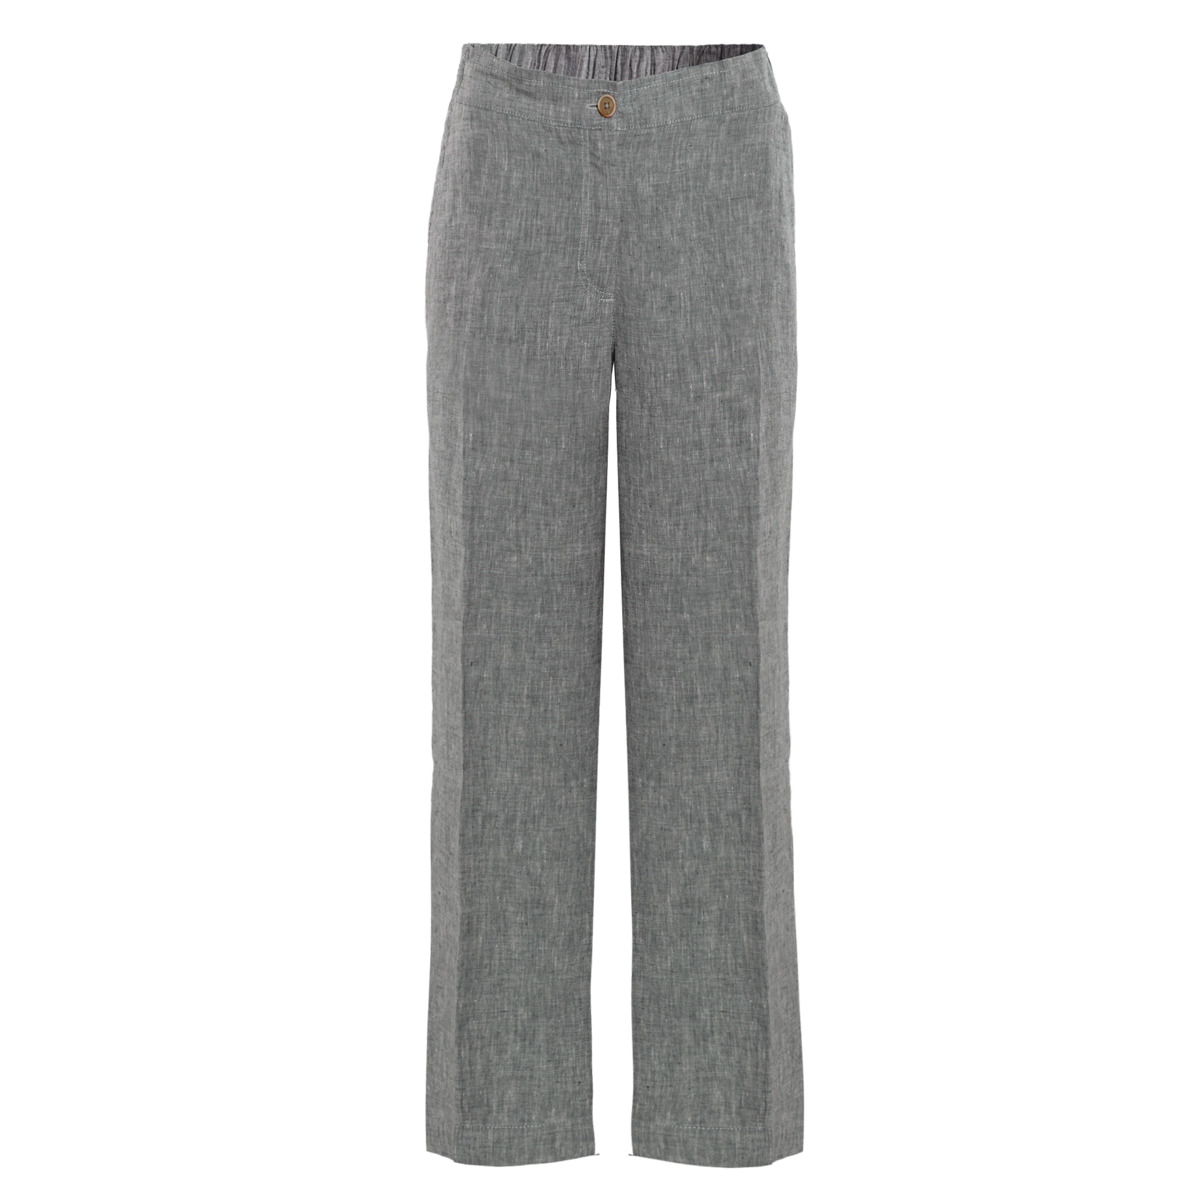 Grey Linen pants, OPHELIA